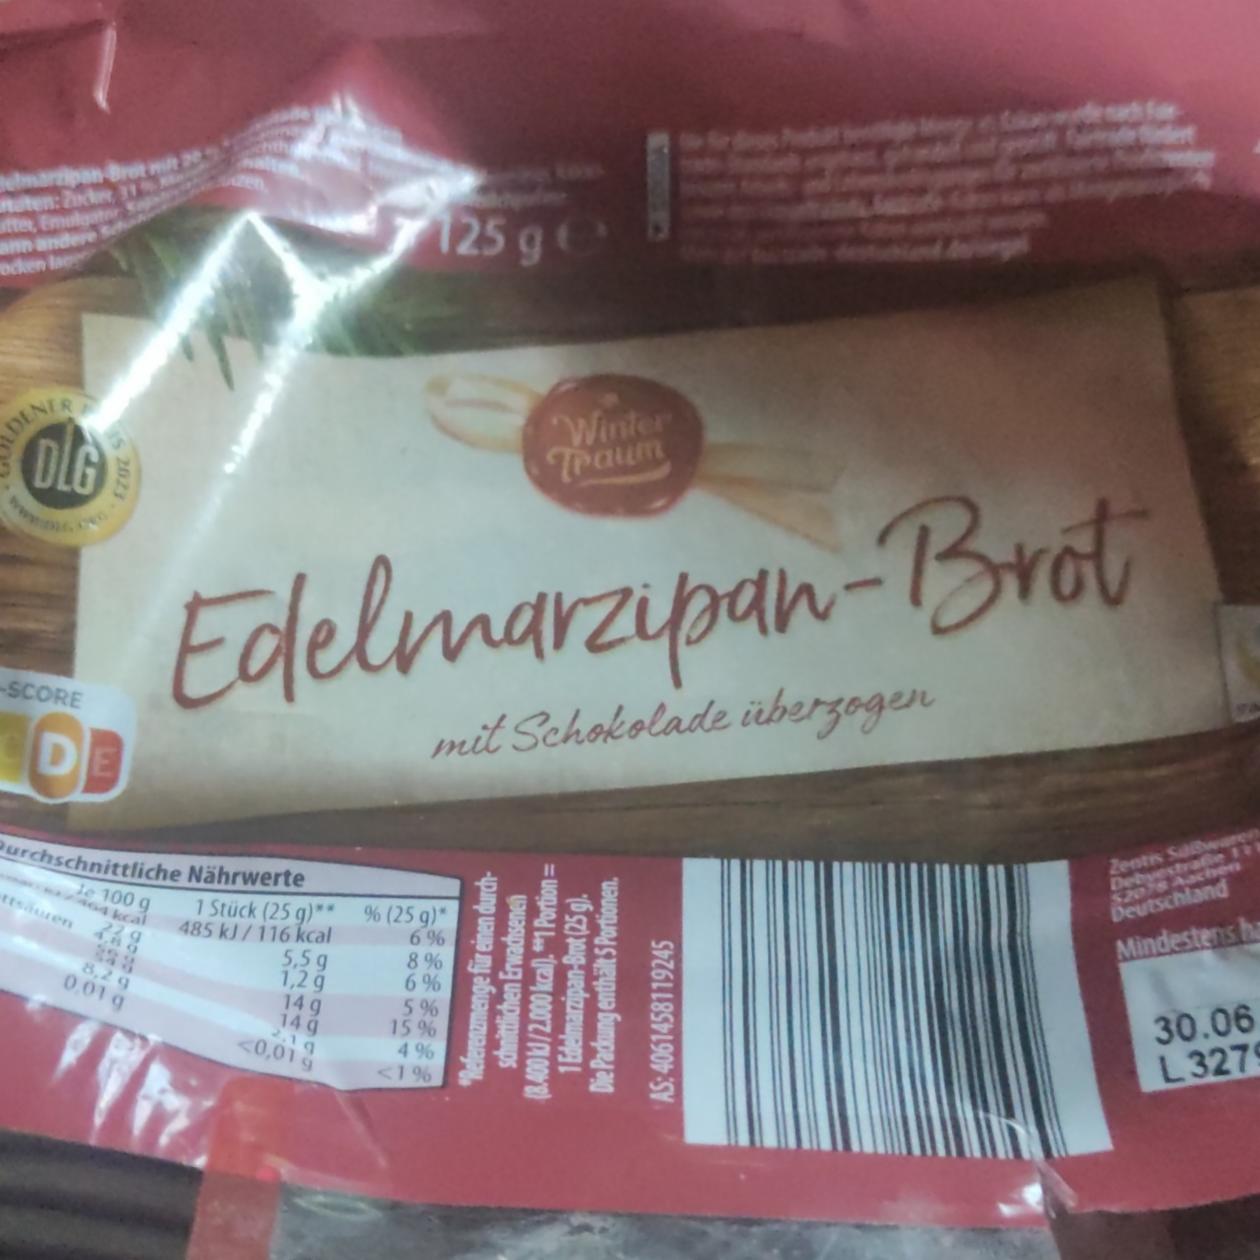 Fotografie - Edelmarzipan - Brot mit Schokolade überzogen Wintertraum